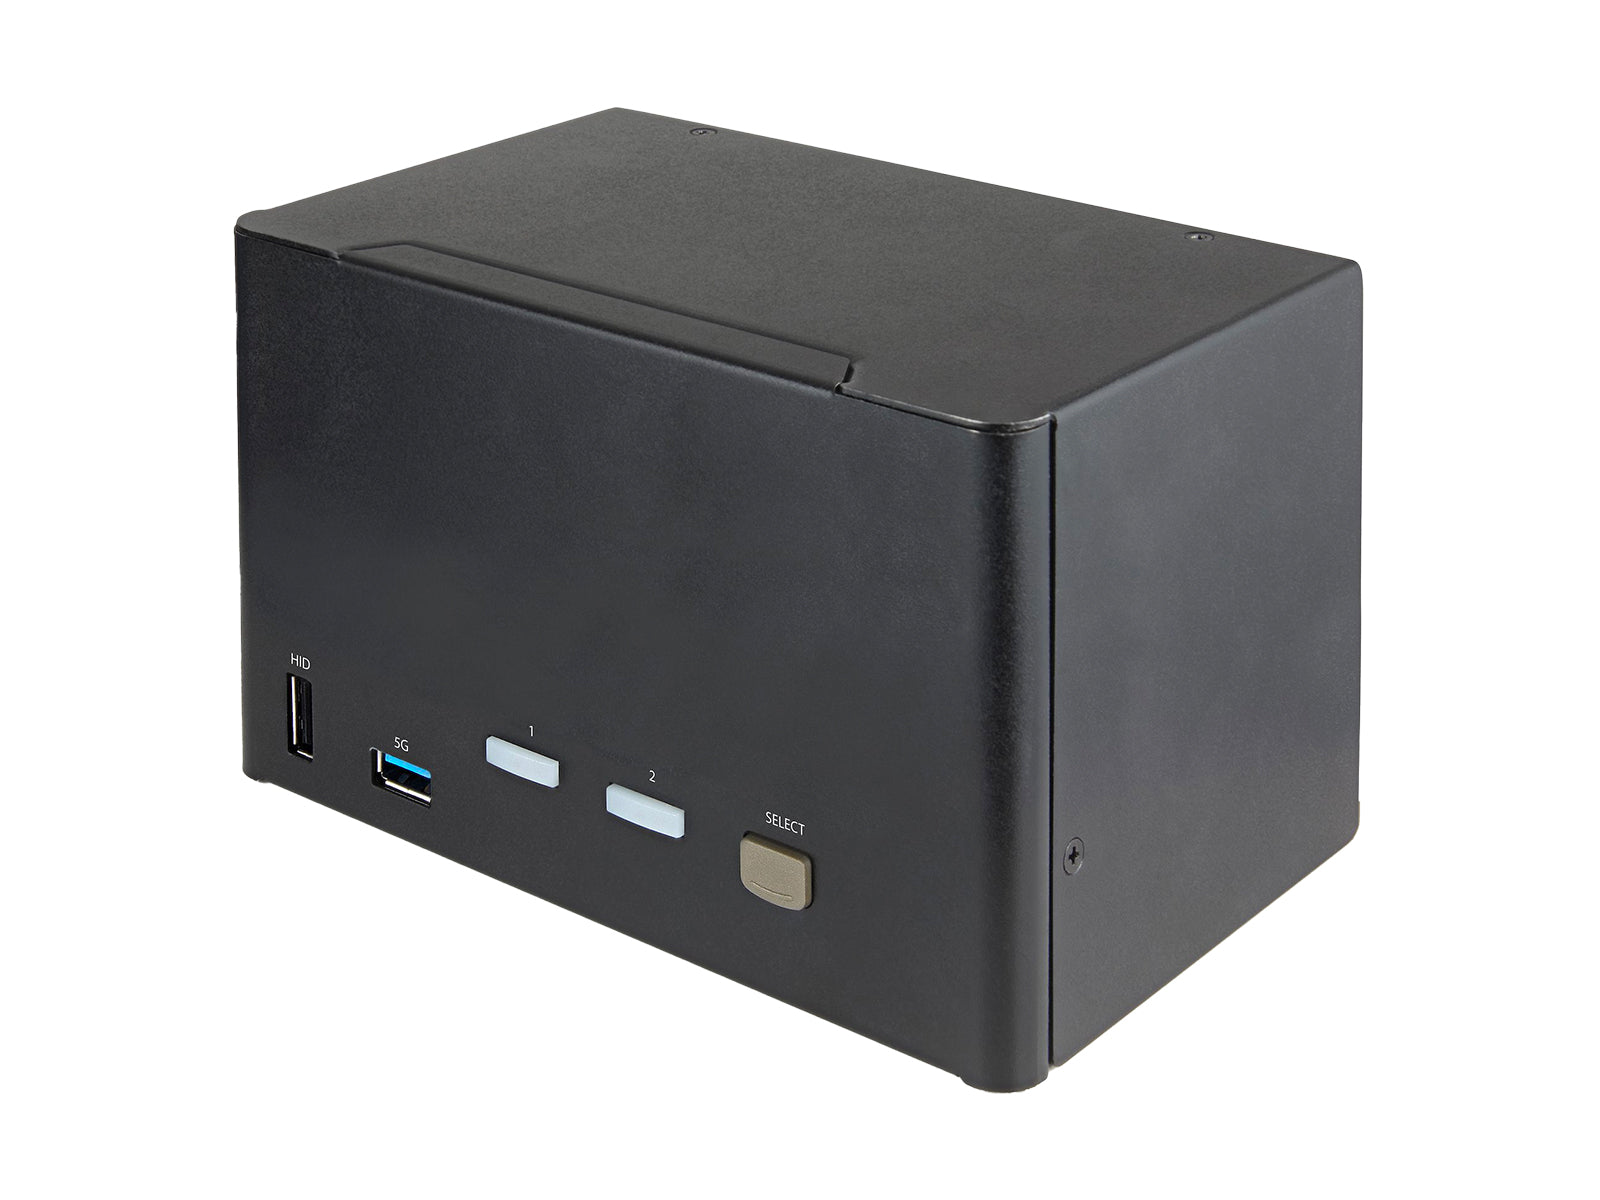 2 Port Quad Monitor DisplayPort KVM Switch - 4K 60Hz UHD HDR - Desktop 4K DP 1.2 KVM with 2 Port USB 3.0 Hub (5Gbps) & 4x USB 2.0 HID Ports, Audio - Hotkey Switching - TAA (SV231QDPU34K) Monitors.com 